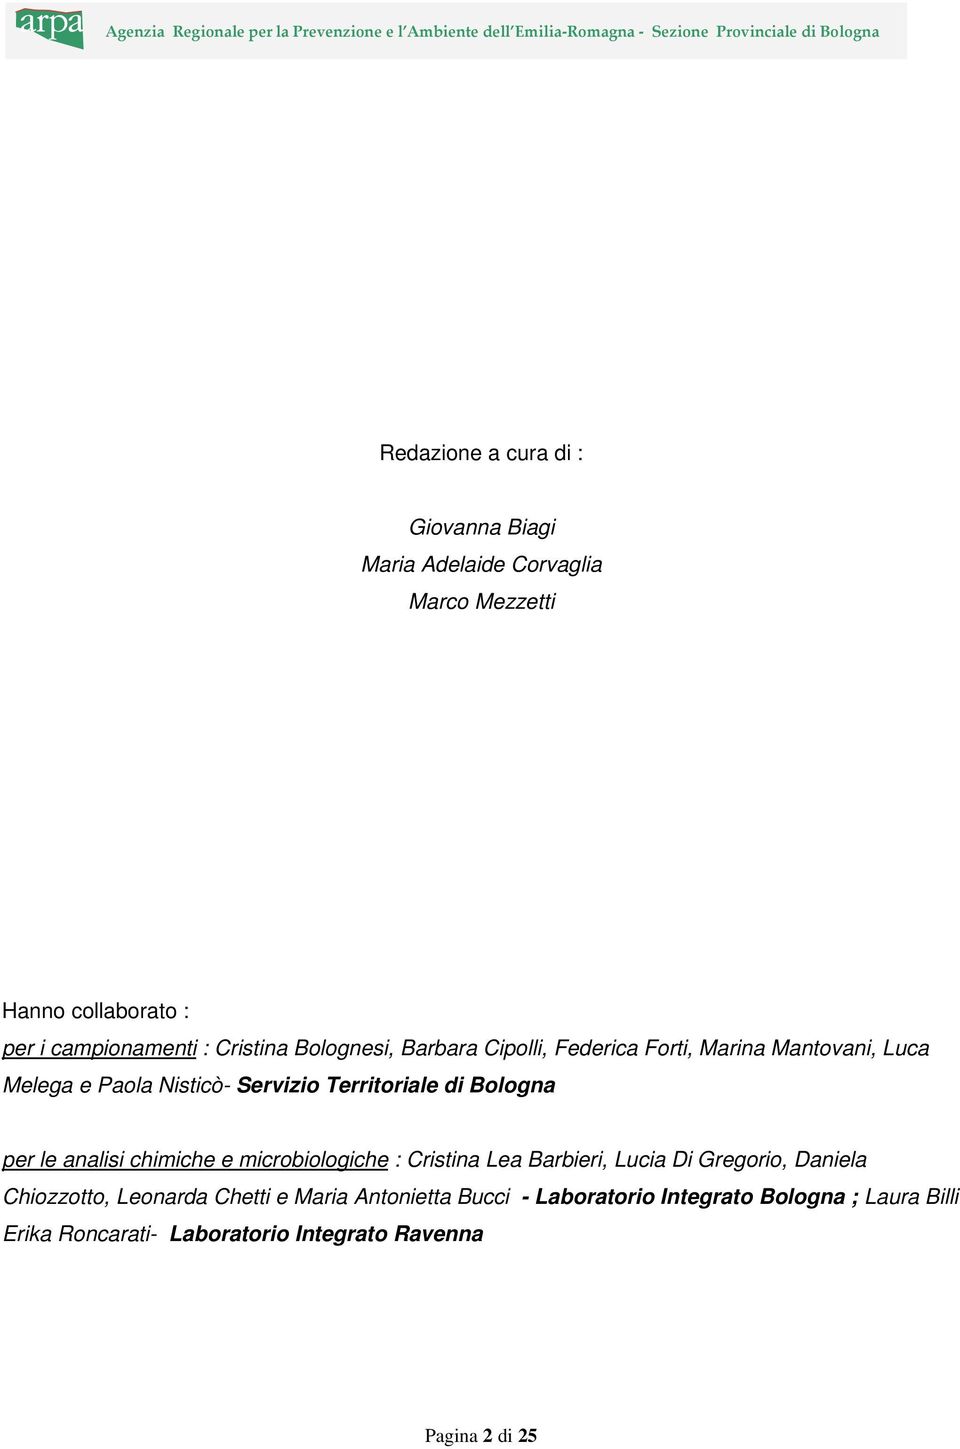 Bologna per le analisi chimiche e microbiologiche : Cristina Lea Barbieri, Lucia Di Gregorio, Daniela Chiozzotto, Leonarda